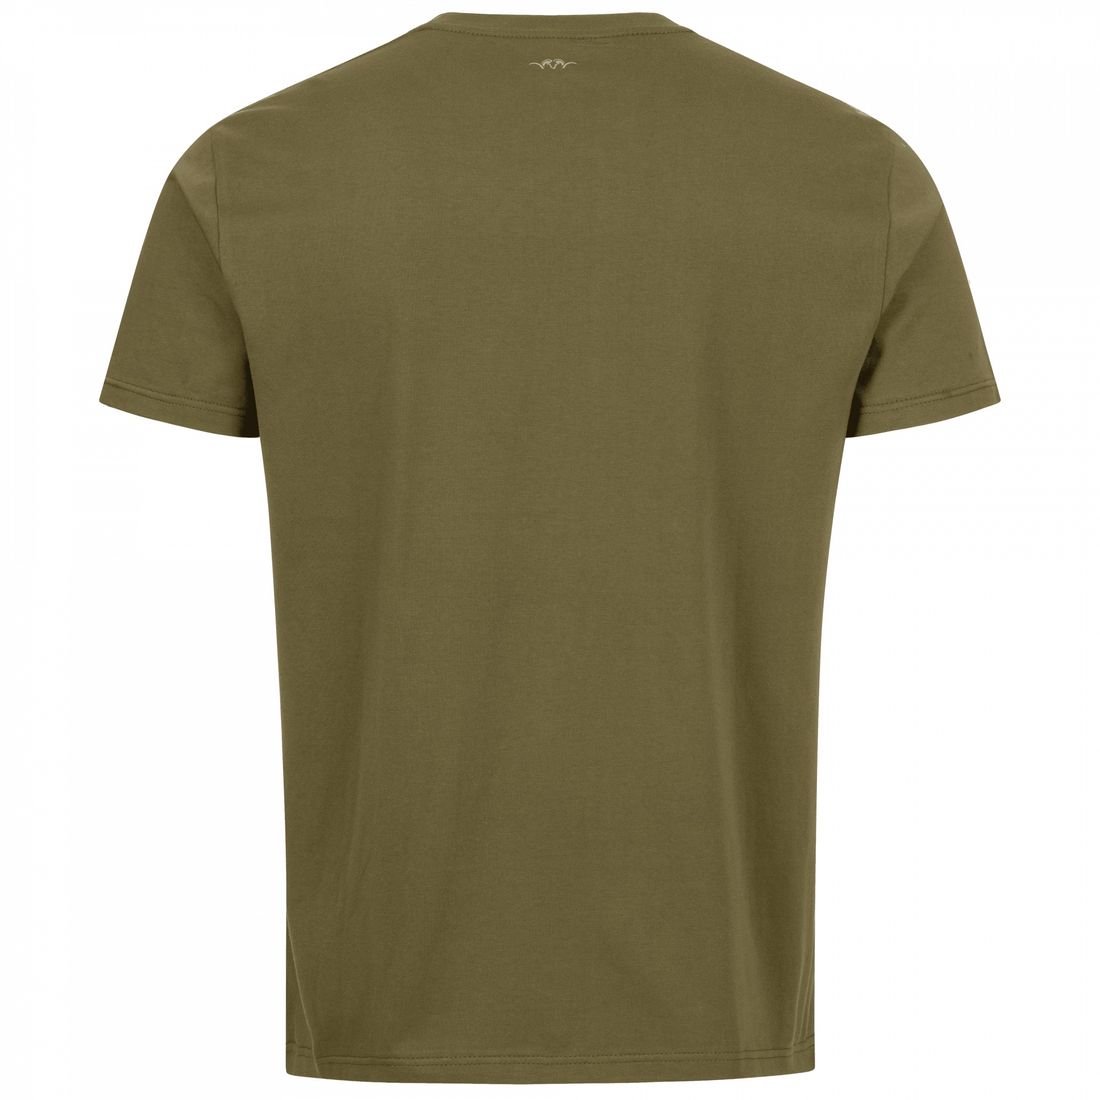 BLASER Herren T-Shirt Maurice in dunkel oliv Rückenbereich